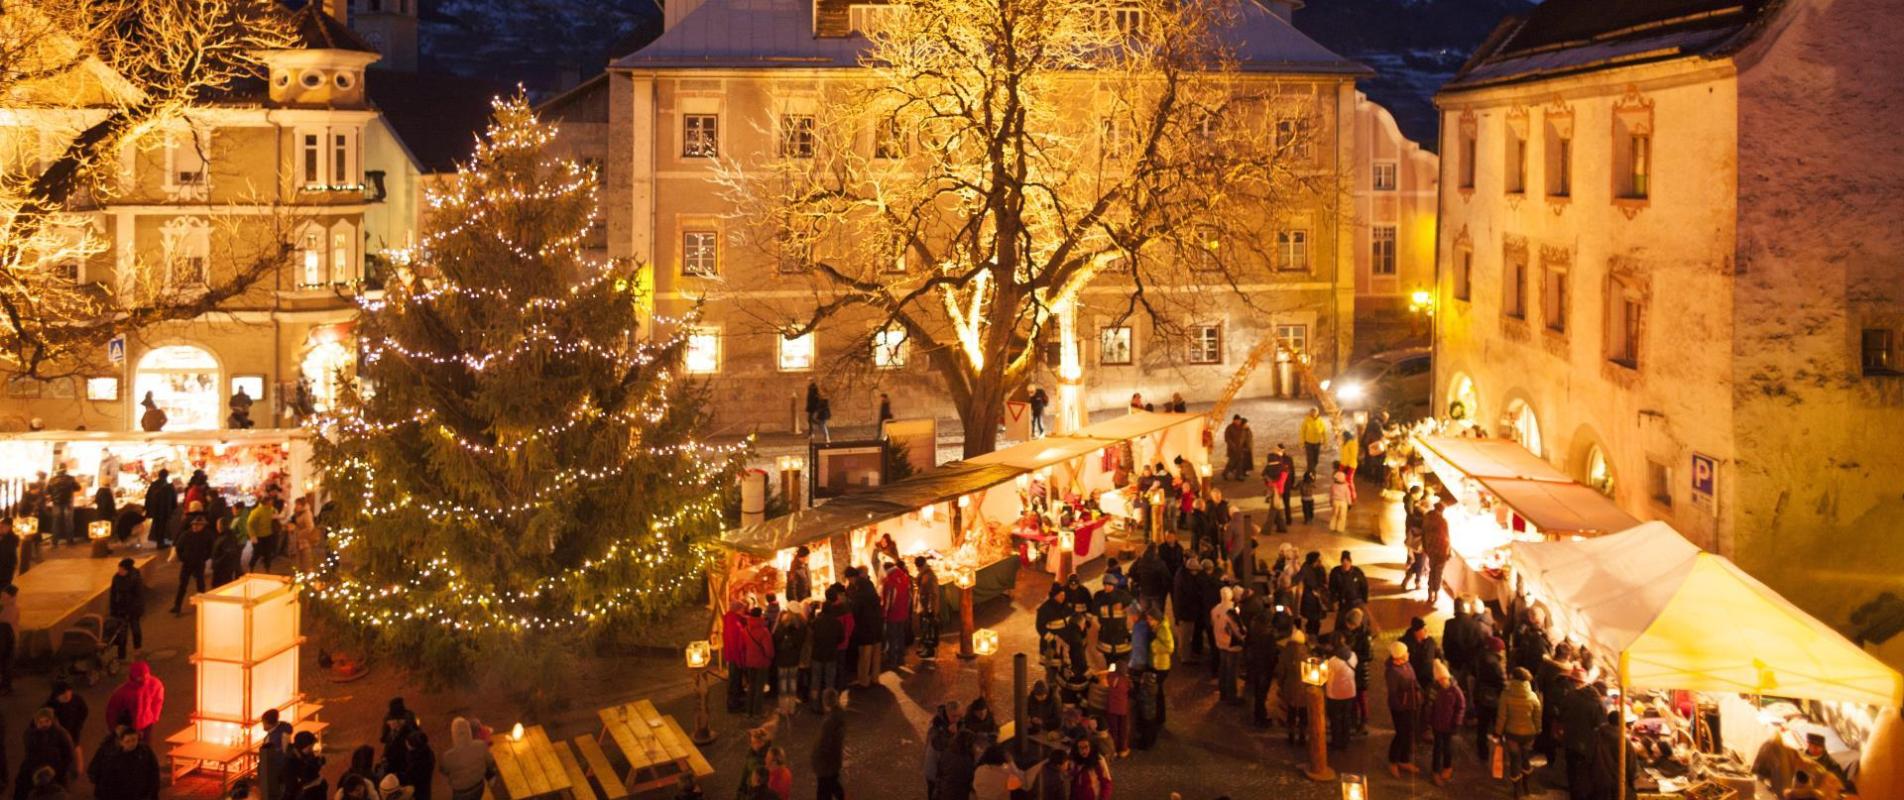 event-weihnachtsmarkt-glurns-vinschgau-fb